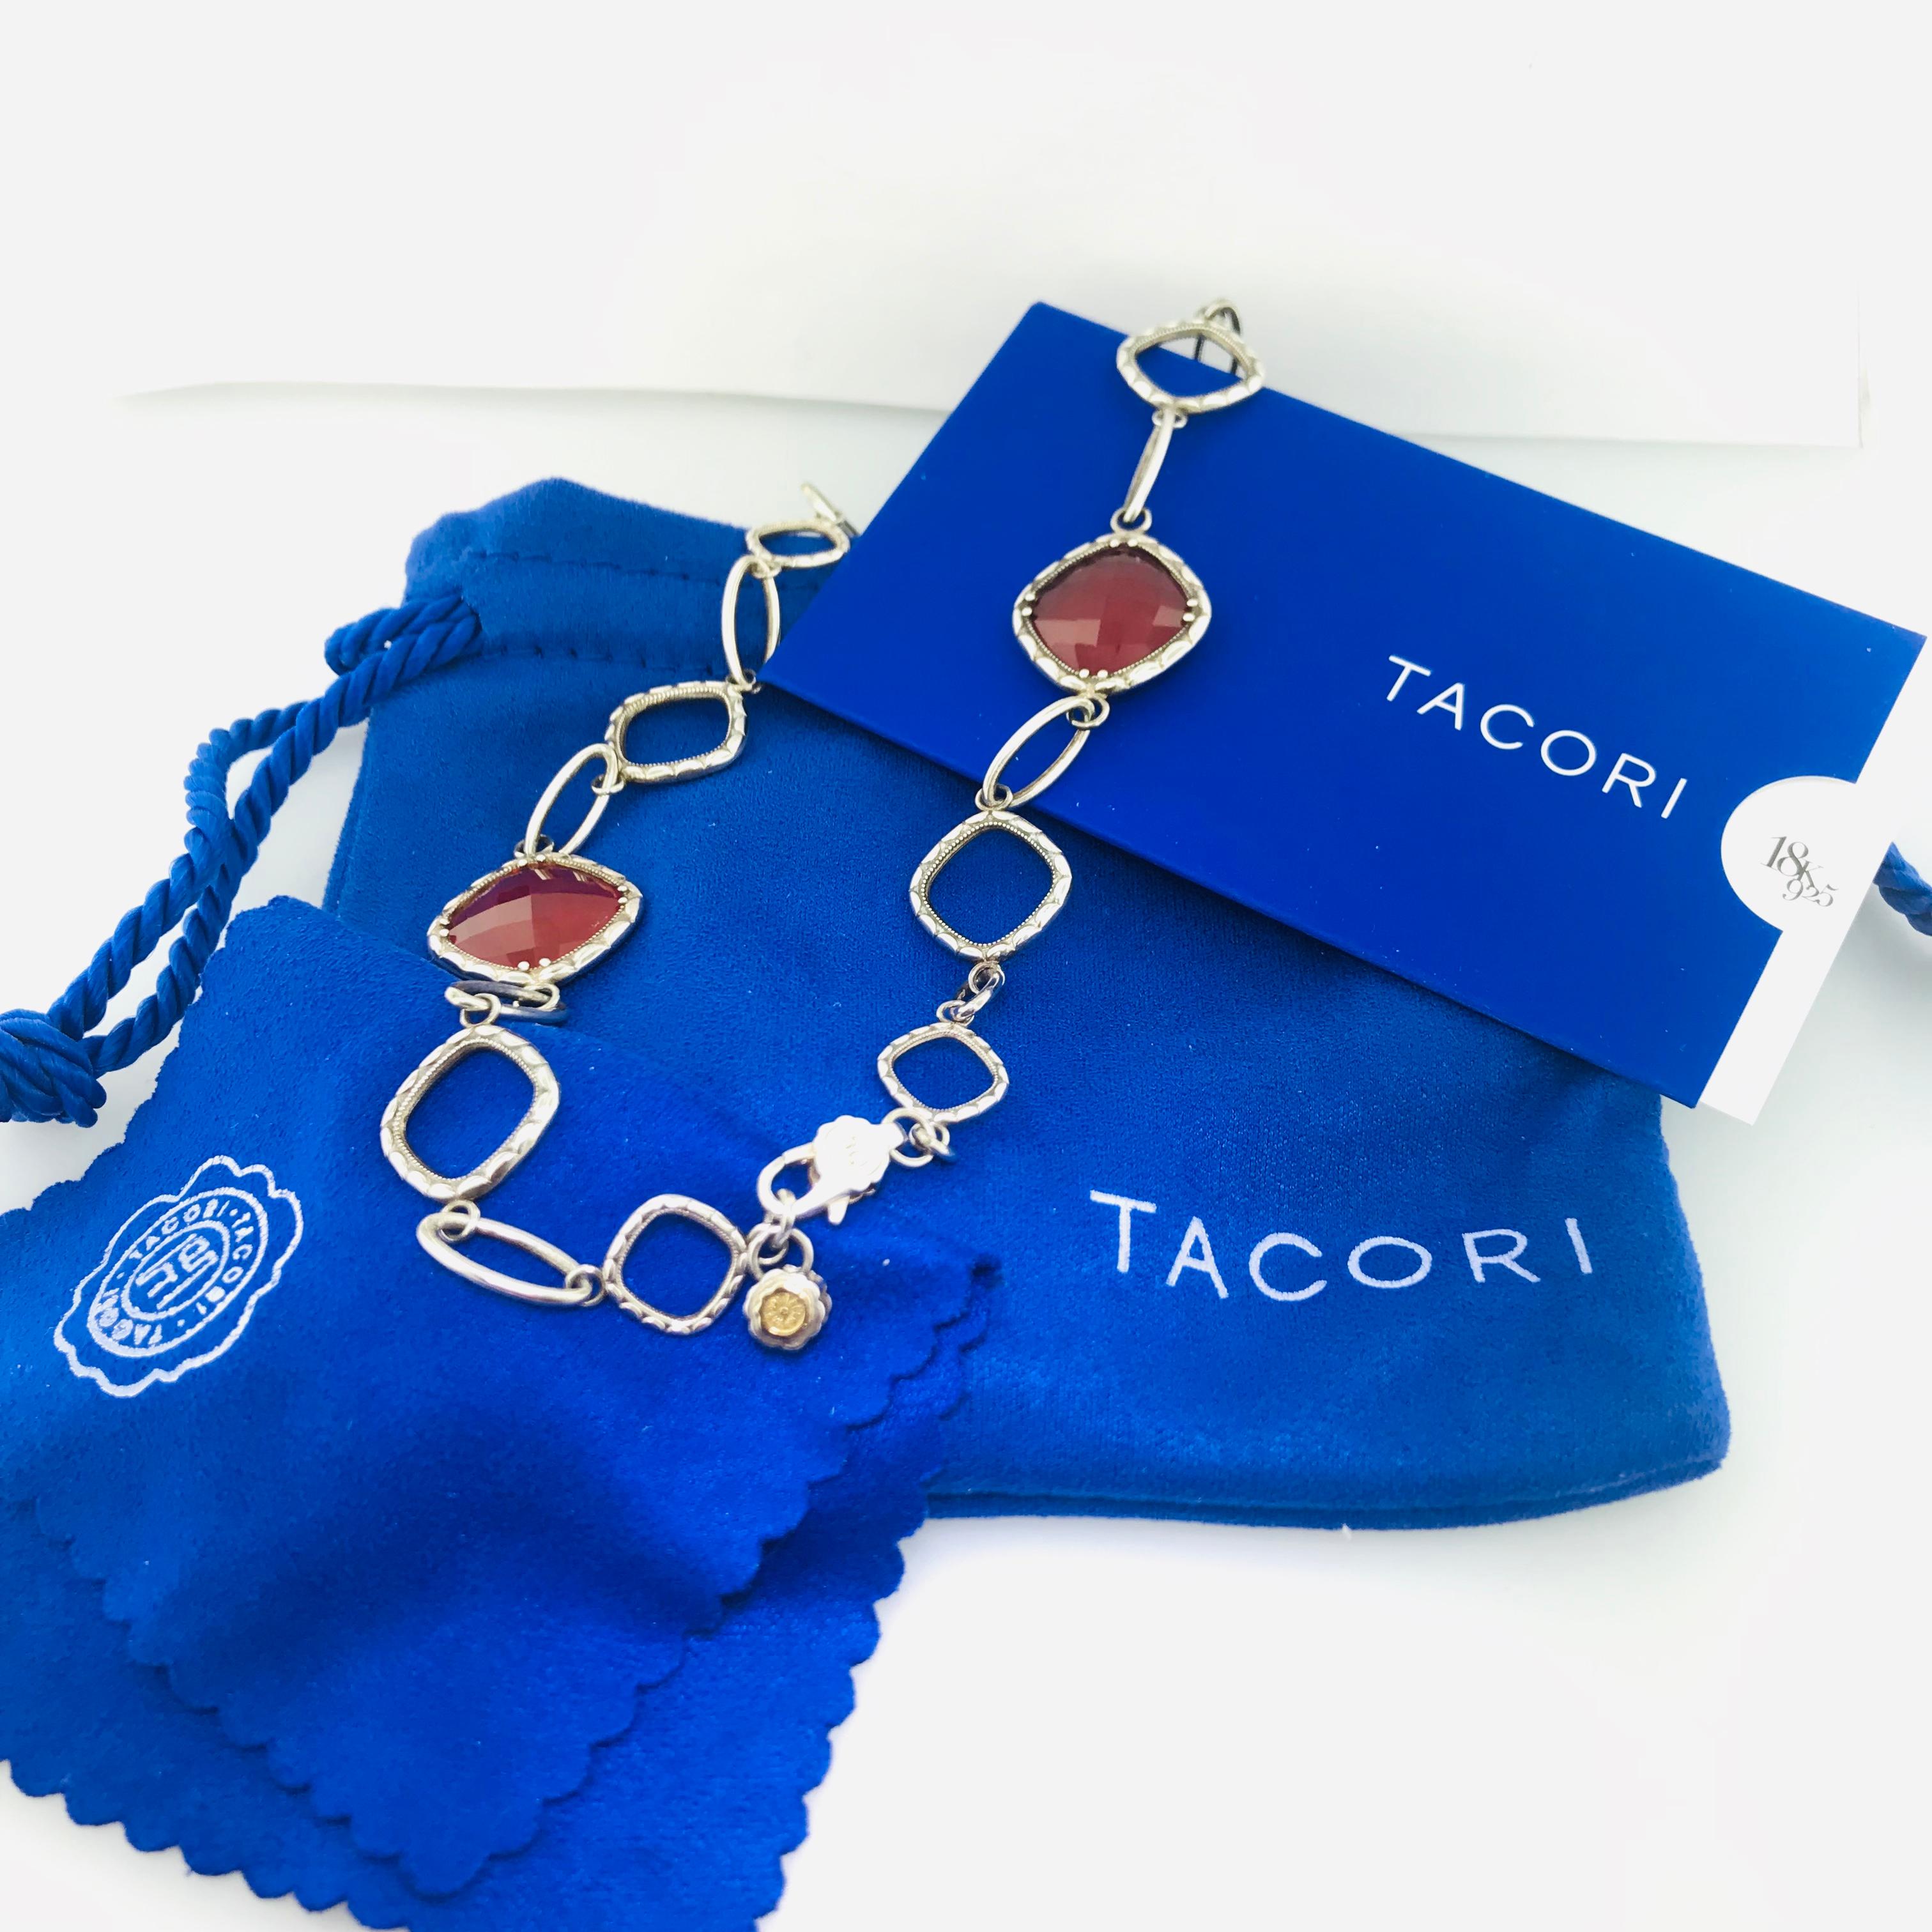 Original Rare Tacori Cascading Gem Necklace Featuring Clear Quartz over Red Onyx For Sale 1